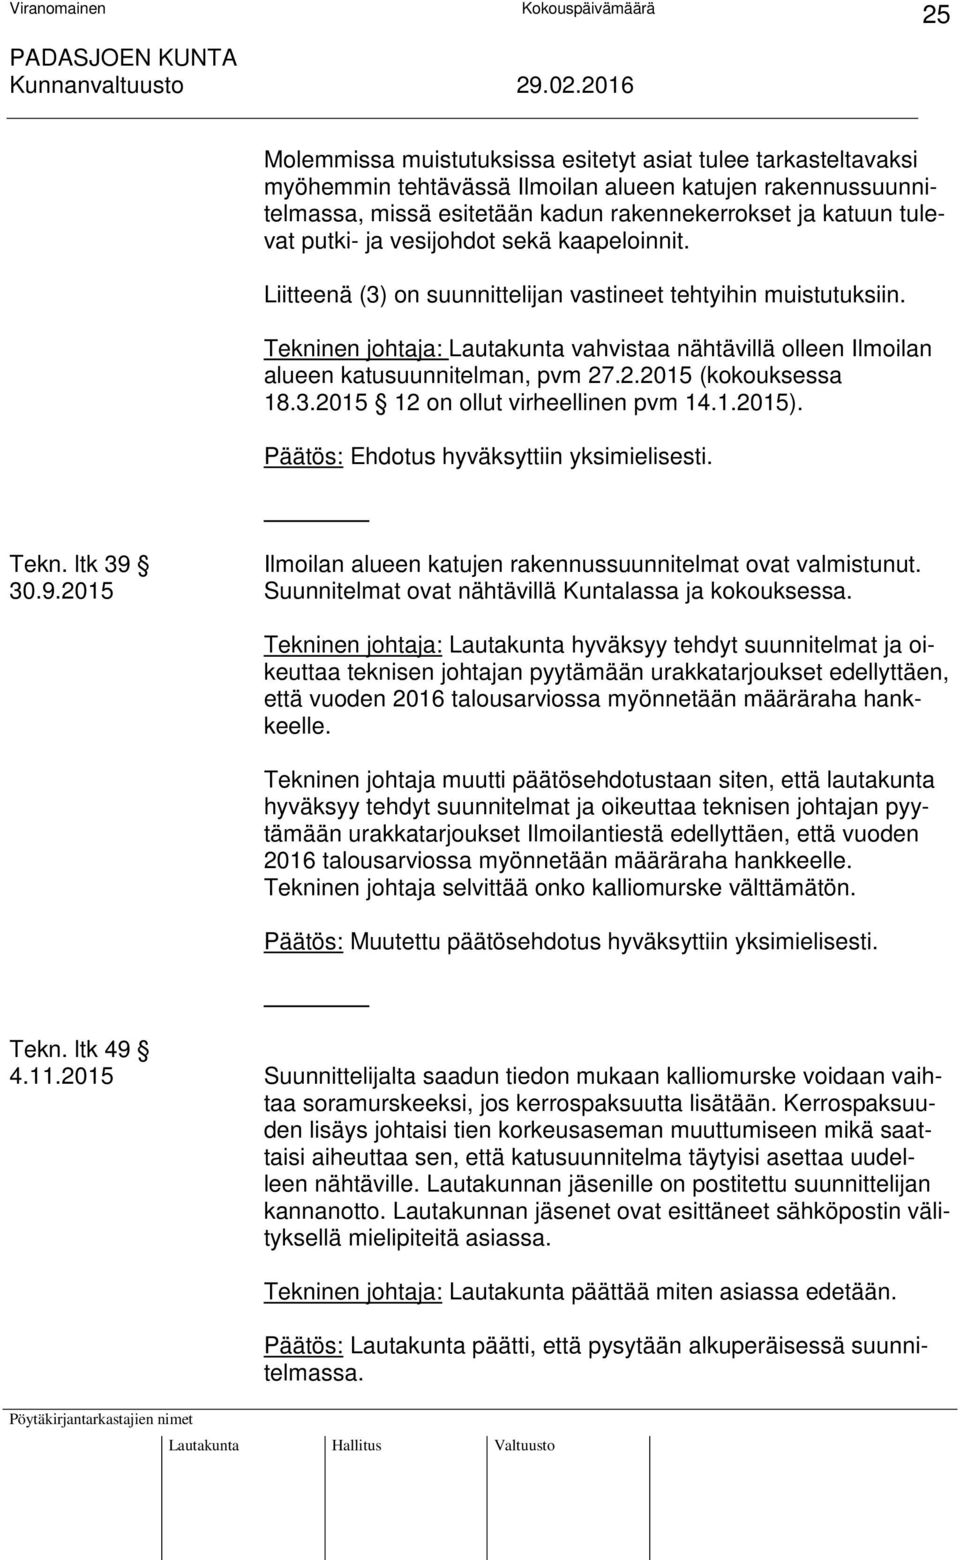 .2.2015 (kokouksessa 18.3.2015 12 on ollut virheellinen pvm 14.1.2015). Tekn. ltk 39 Ilmoilan alueen katujen rakennussuunnitelmat ovat valmistunut. 30.9.2015 Suunnitelmat ovat nähtävillä Kuntalassa ja kokouksessa.